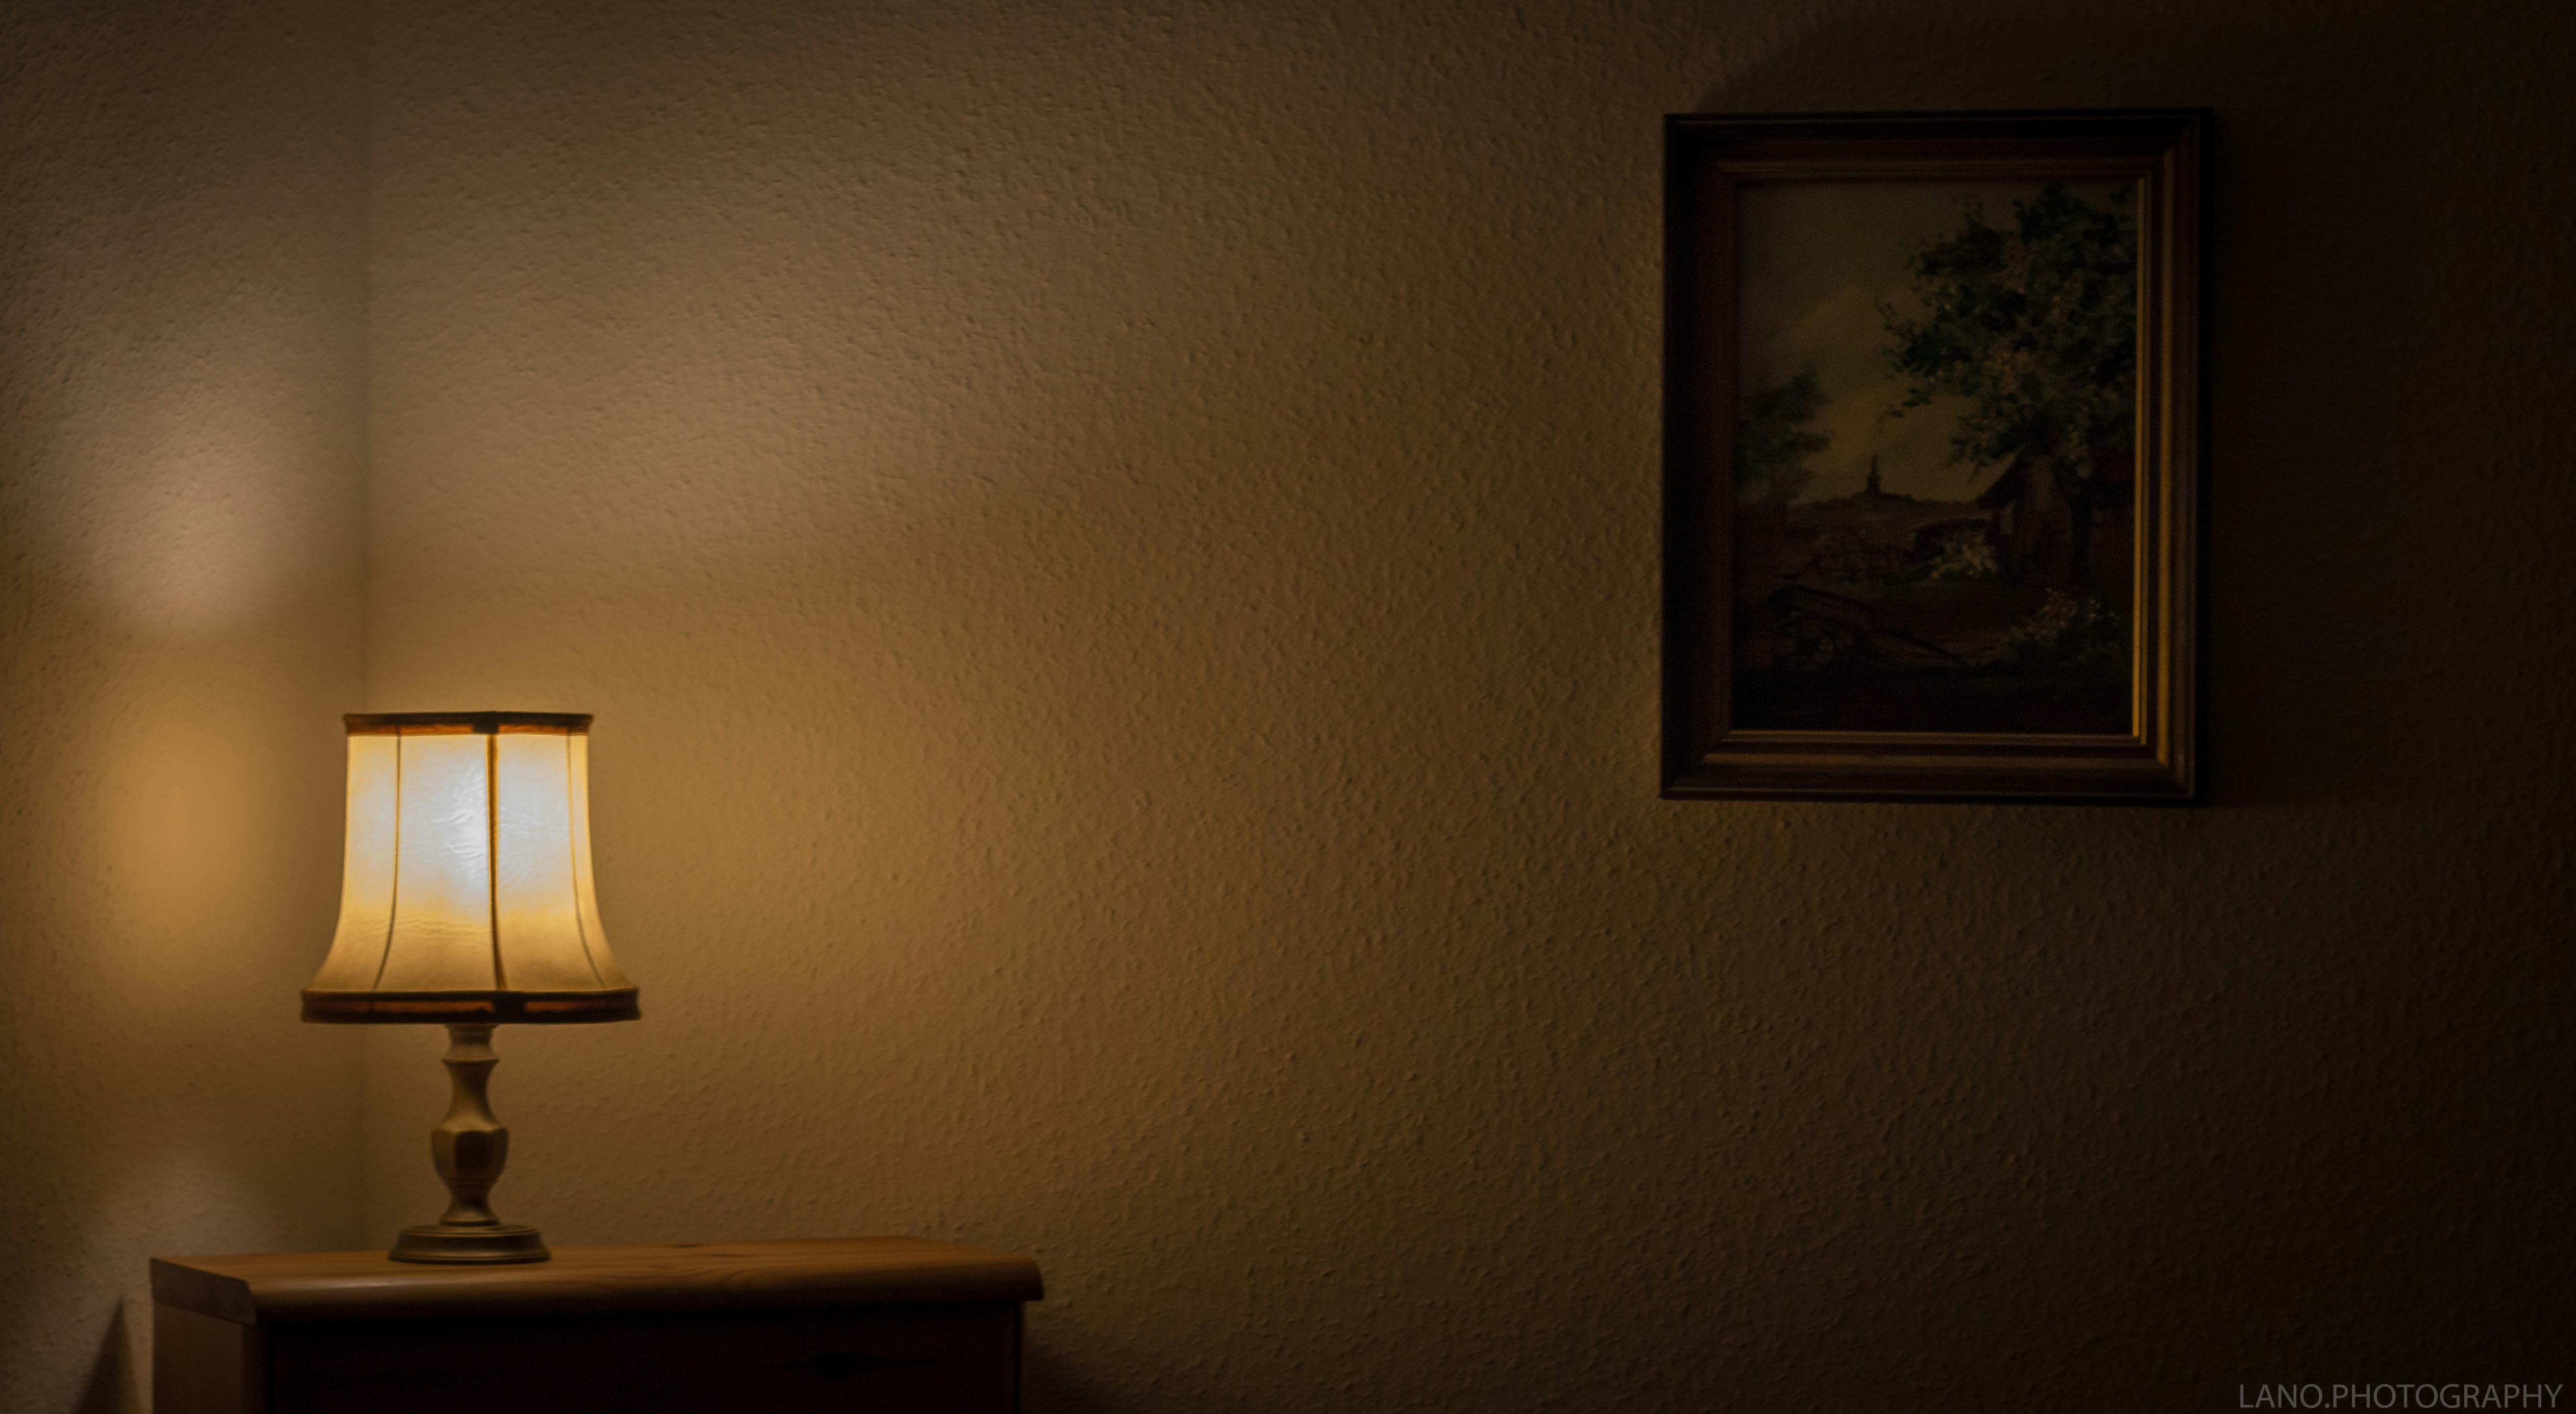 1K+ Dark Bedroom Pictures | Download Free Images on Unsplash